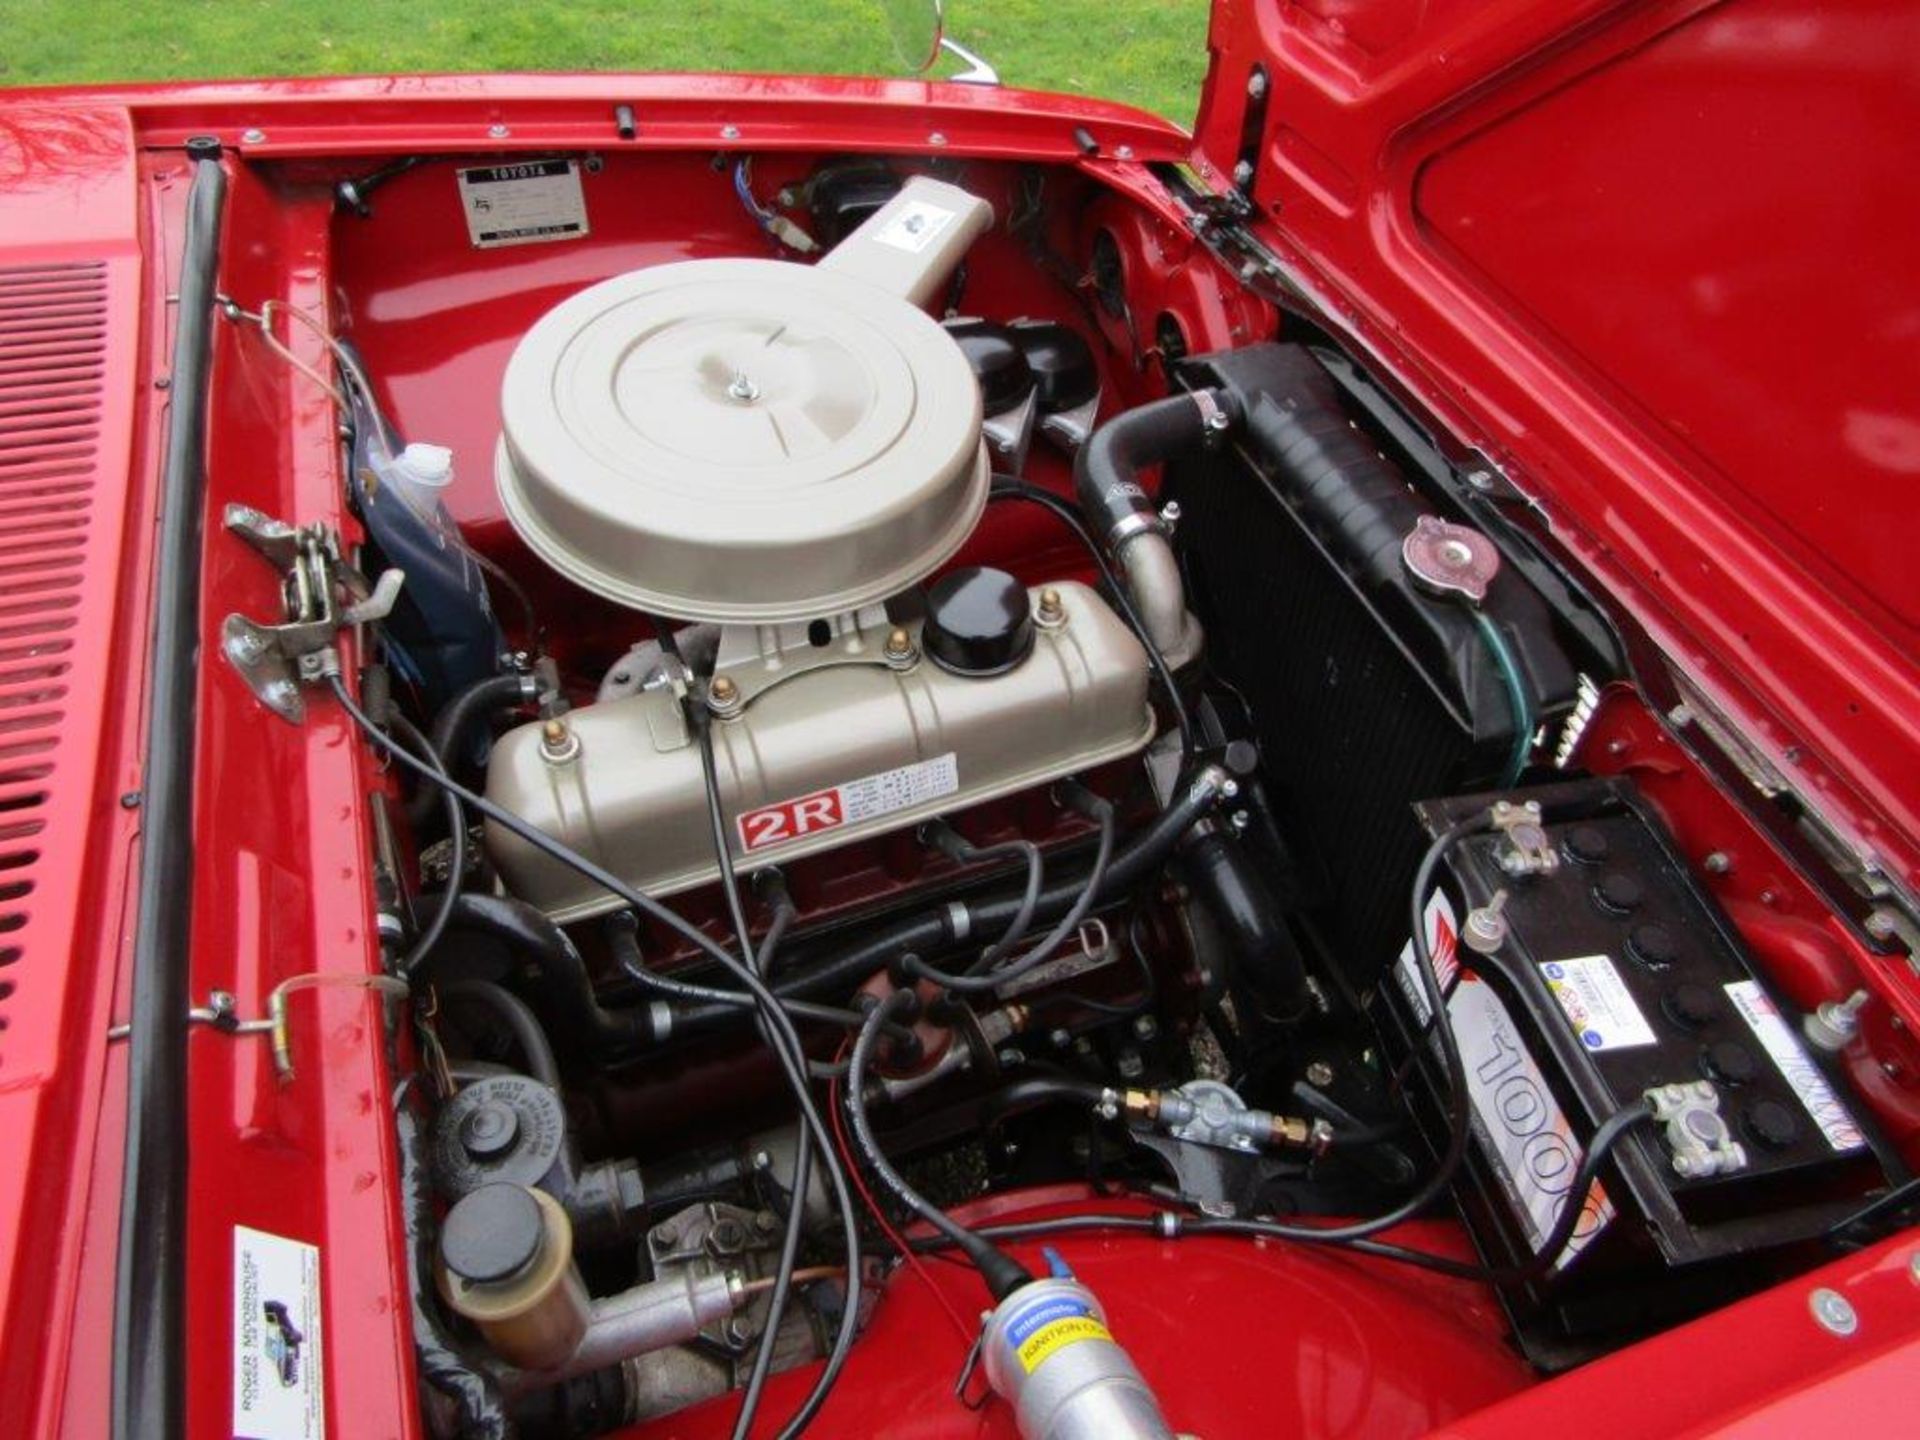 1967 Toyota Corona 1500 - Image 2 of 9